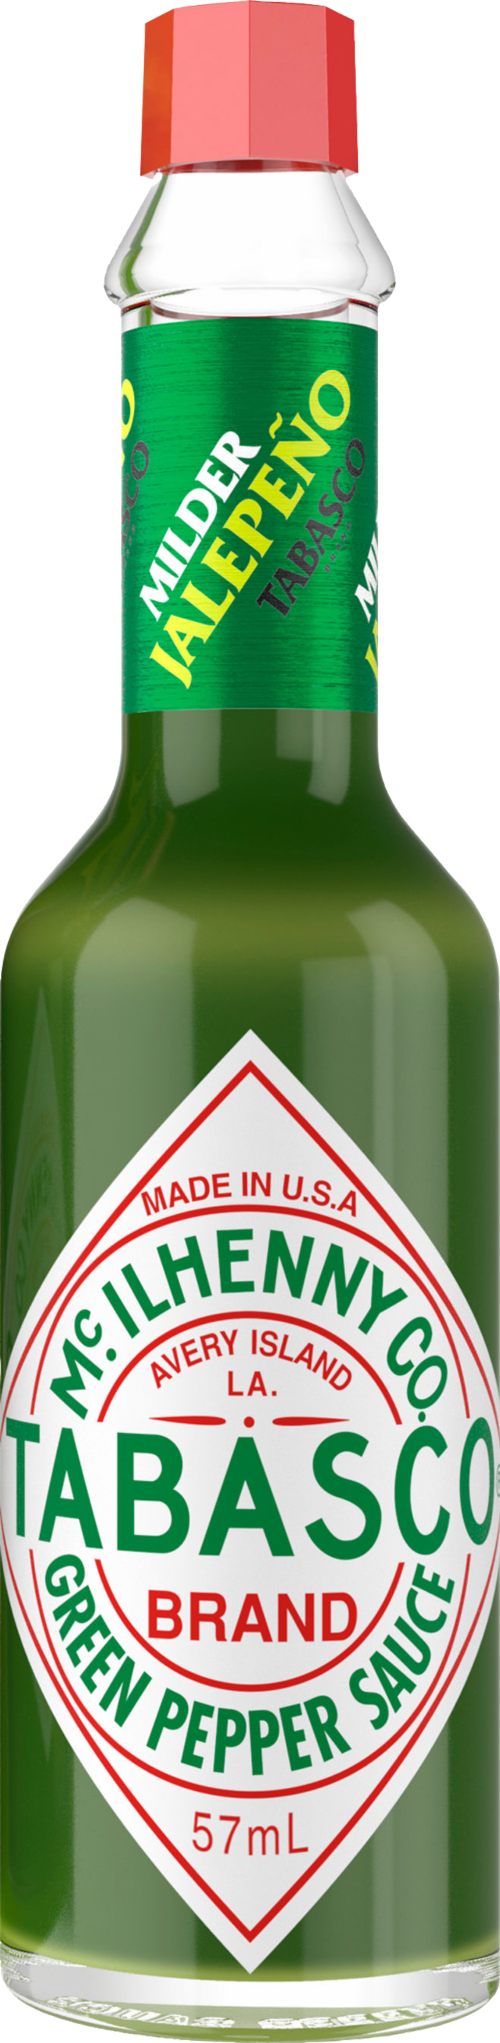 TABASCO Green Pepper Sauce 57ml